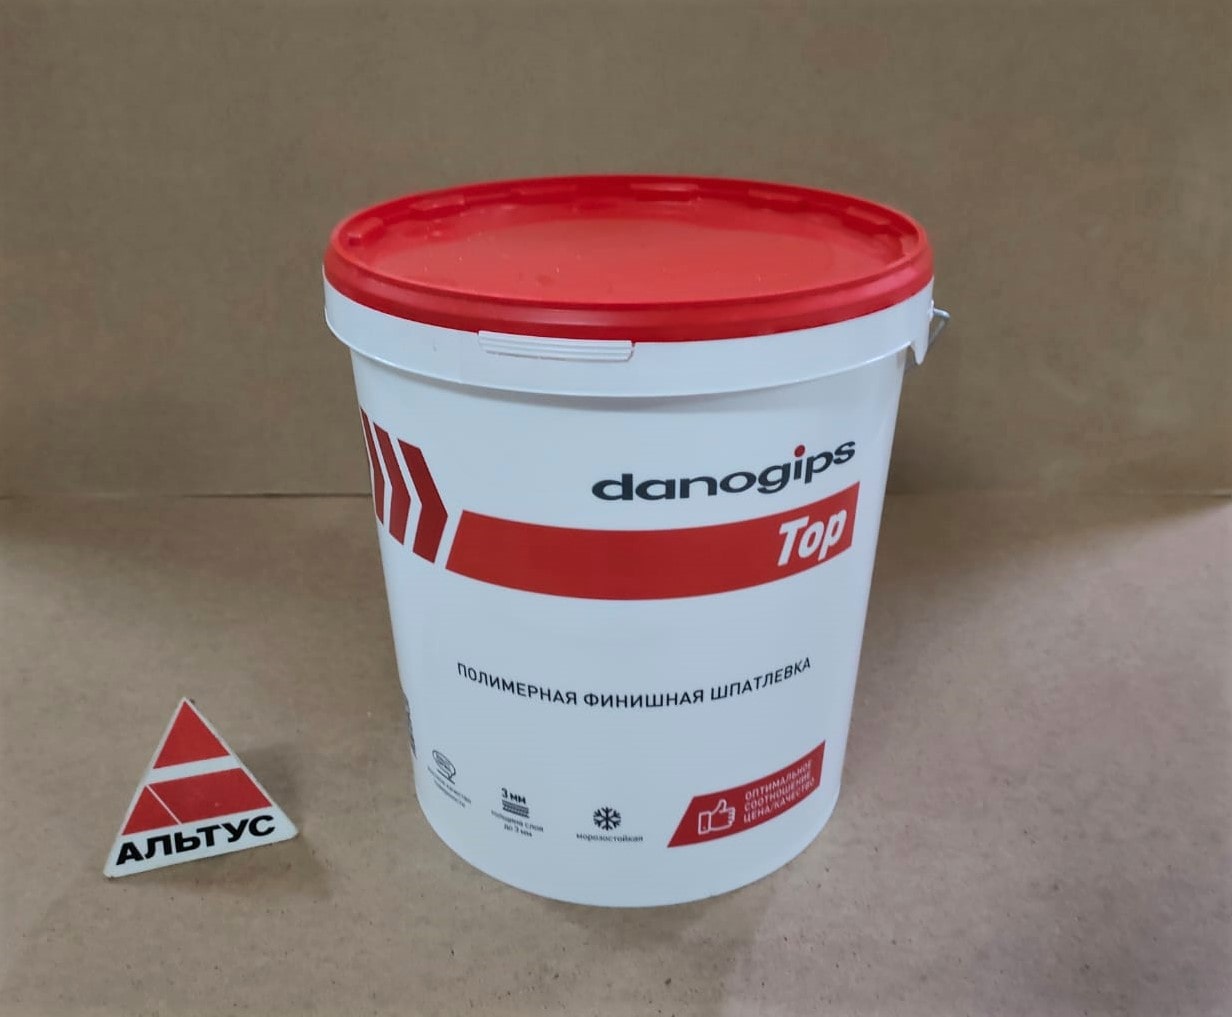 Шпатлевка полимерная финишная danogips TOP / Даногипс ТОП 24 кг								